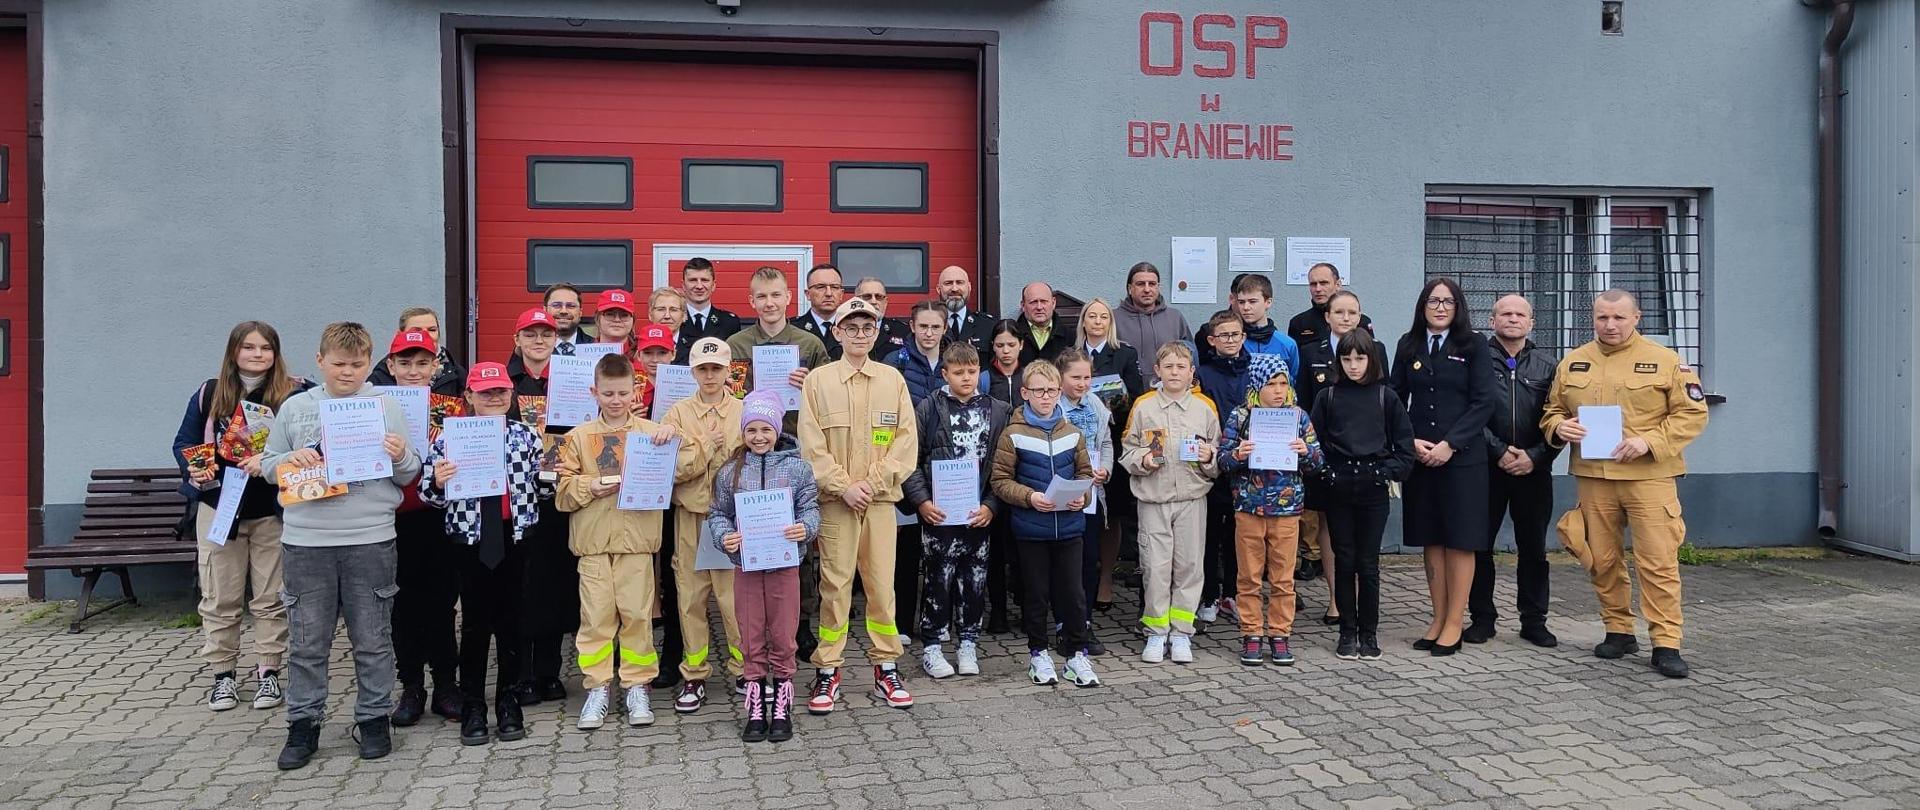 Na zdjęciu na tle remizy OSP Braniewo stoi duża grupa dzieci z dyplomami. W śród dzieci organizatorzy i wychowawcy dzieci ze szkół.